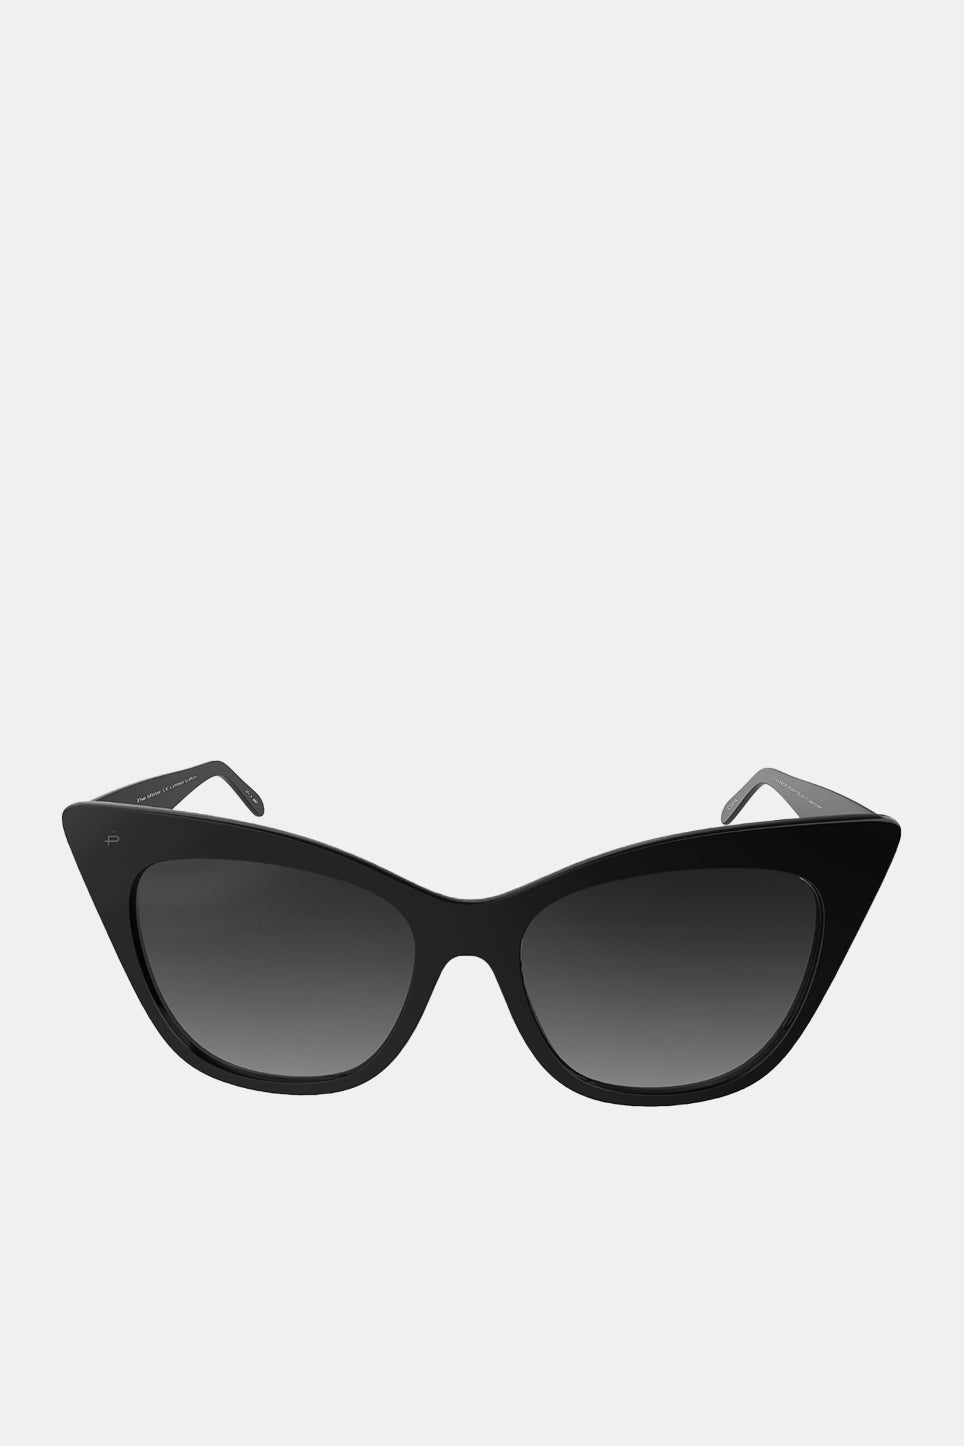 Mister Sunglasses in Black | REVAUX | Repertoire